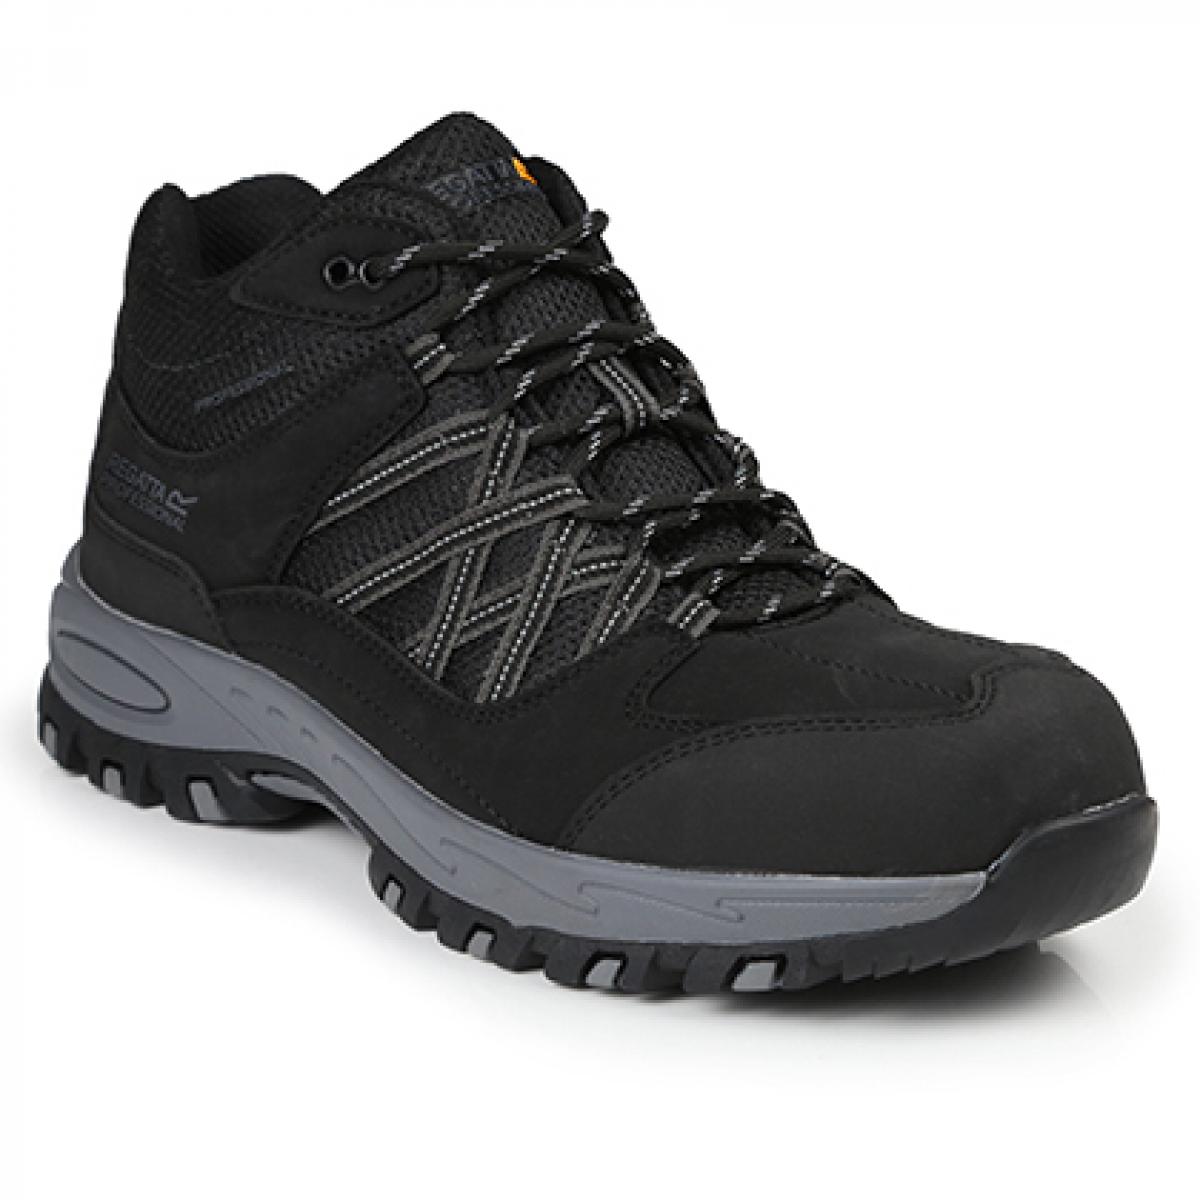 Hersteller: Regatta Safety Footwear Herstellernummer: TRK200 Artikelbezeichnung: Sandstone SB Safety Hiker - Arbeitsschuhe Farbe: Black/Granite